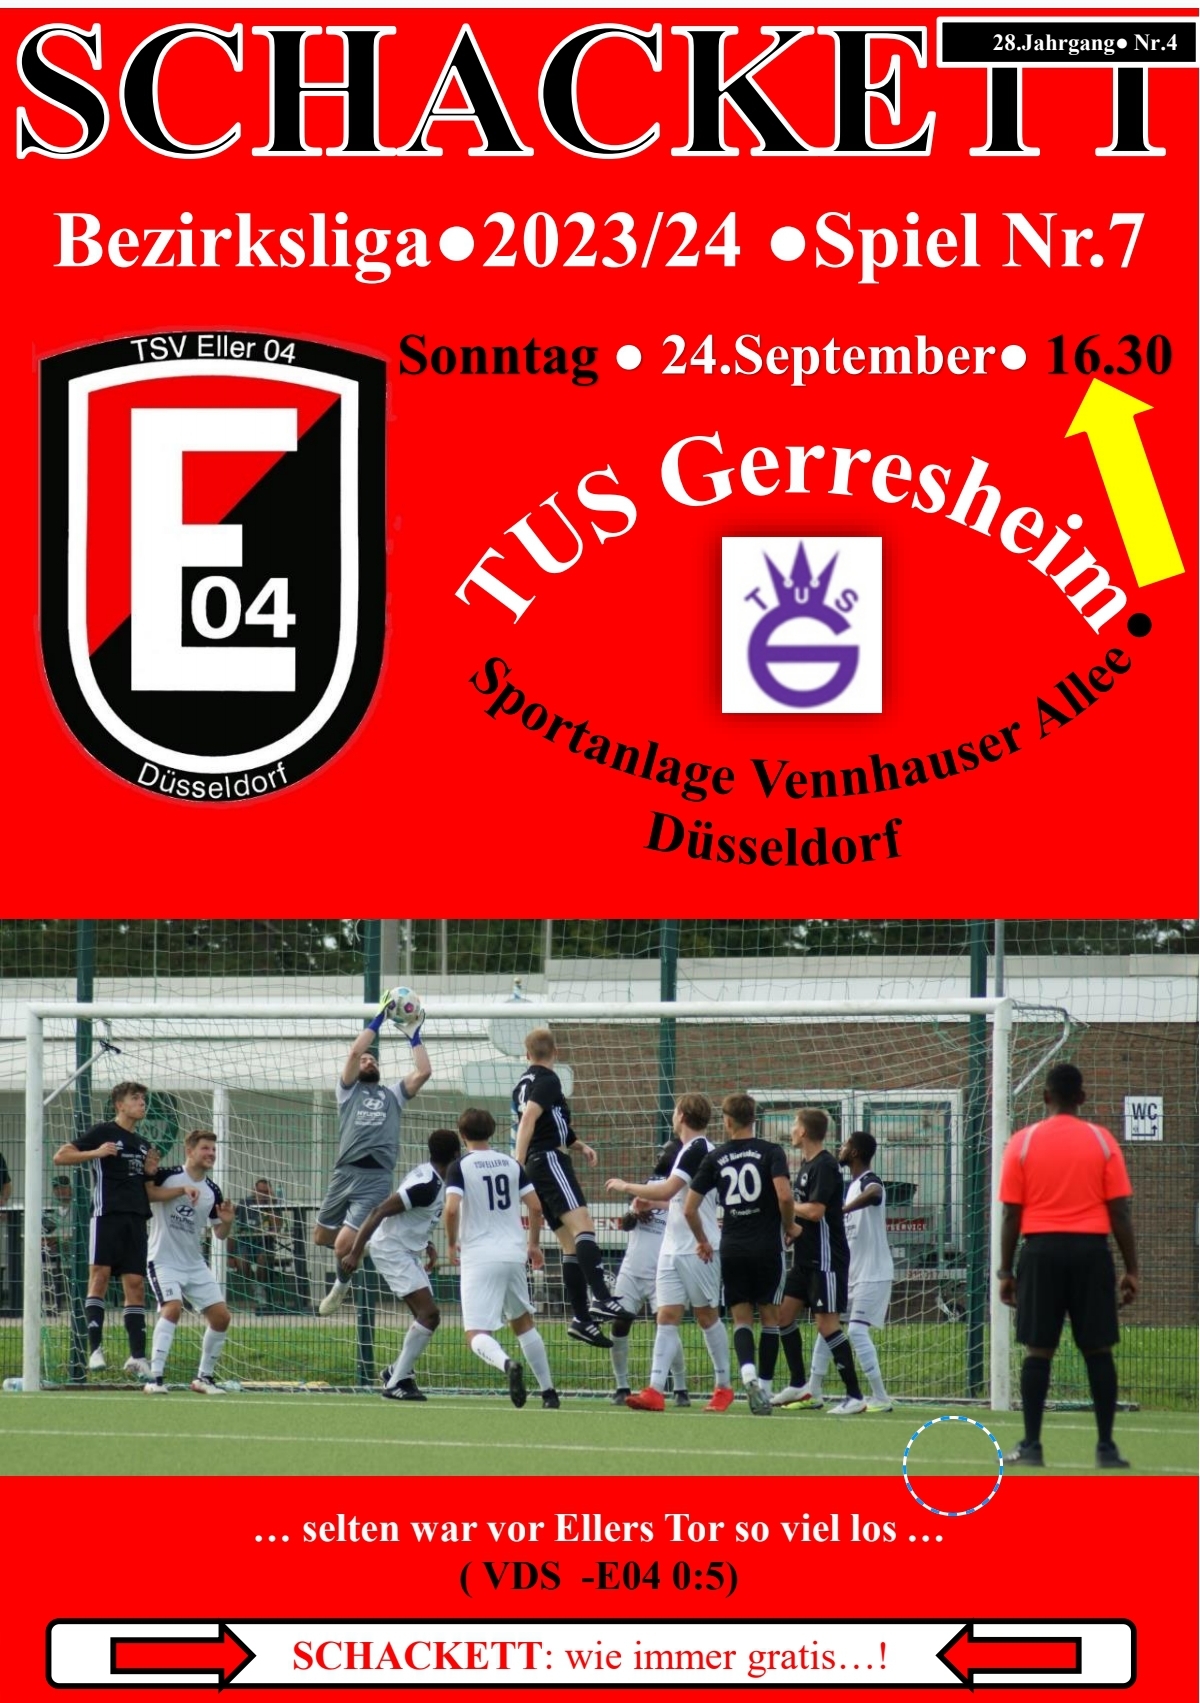 Vorschau auf das Derby gegen TUS Gerresheim am kommenden Sonntag um 16.30 Uhr